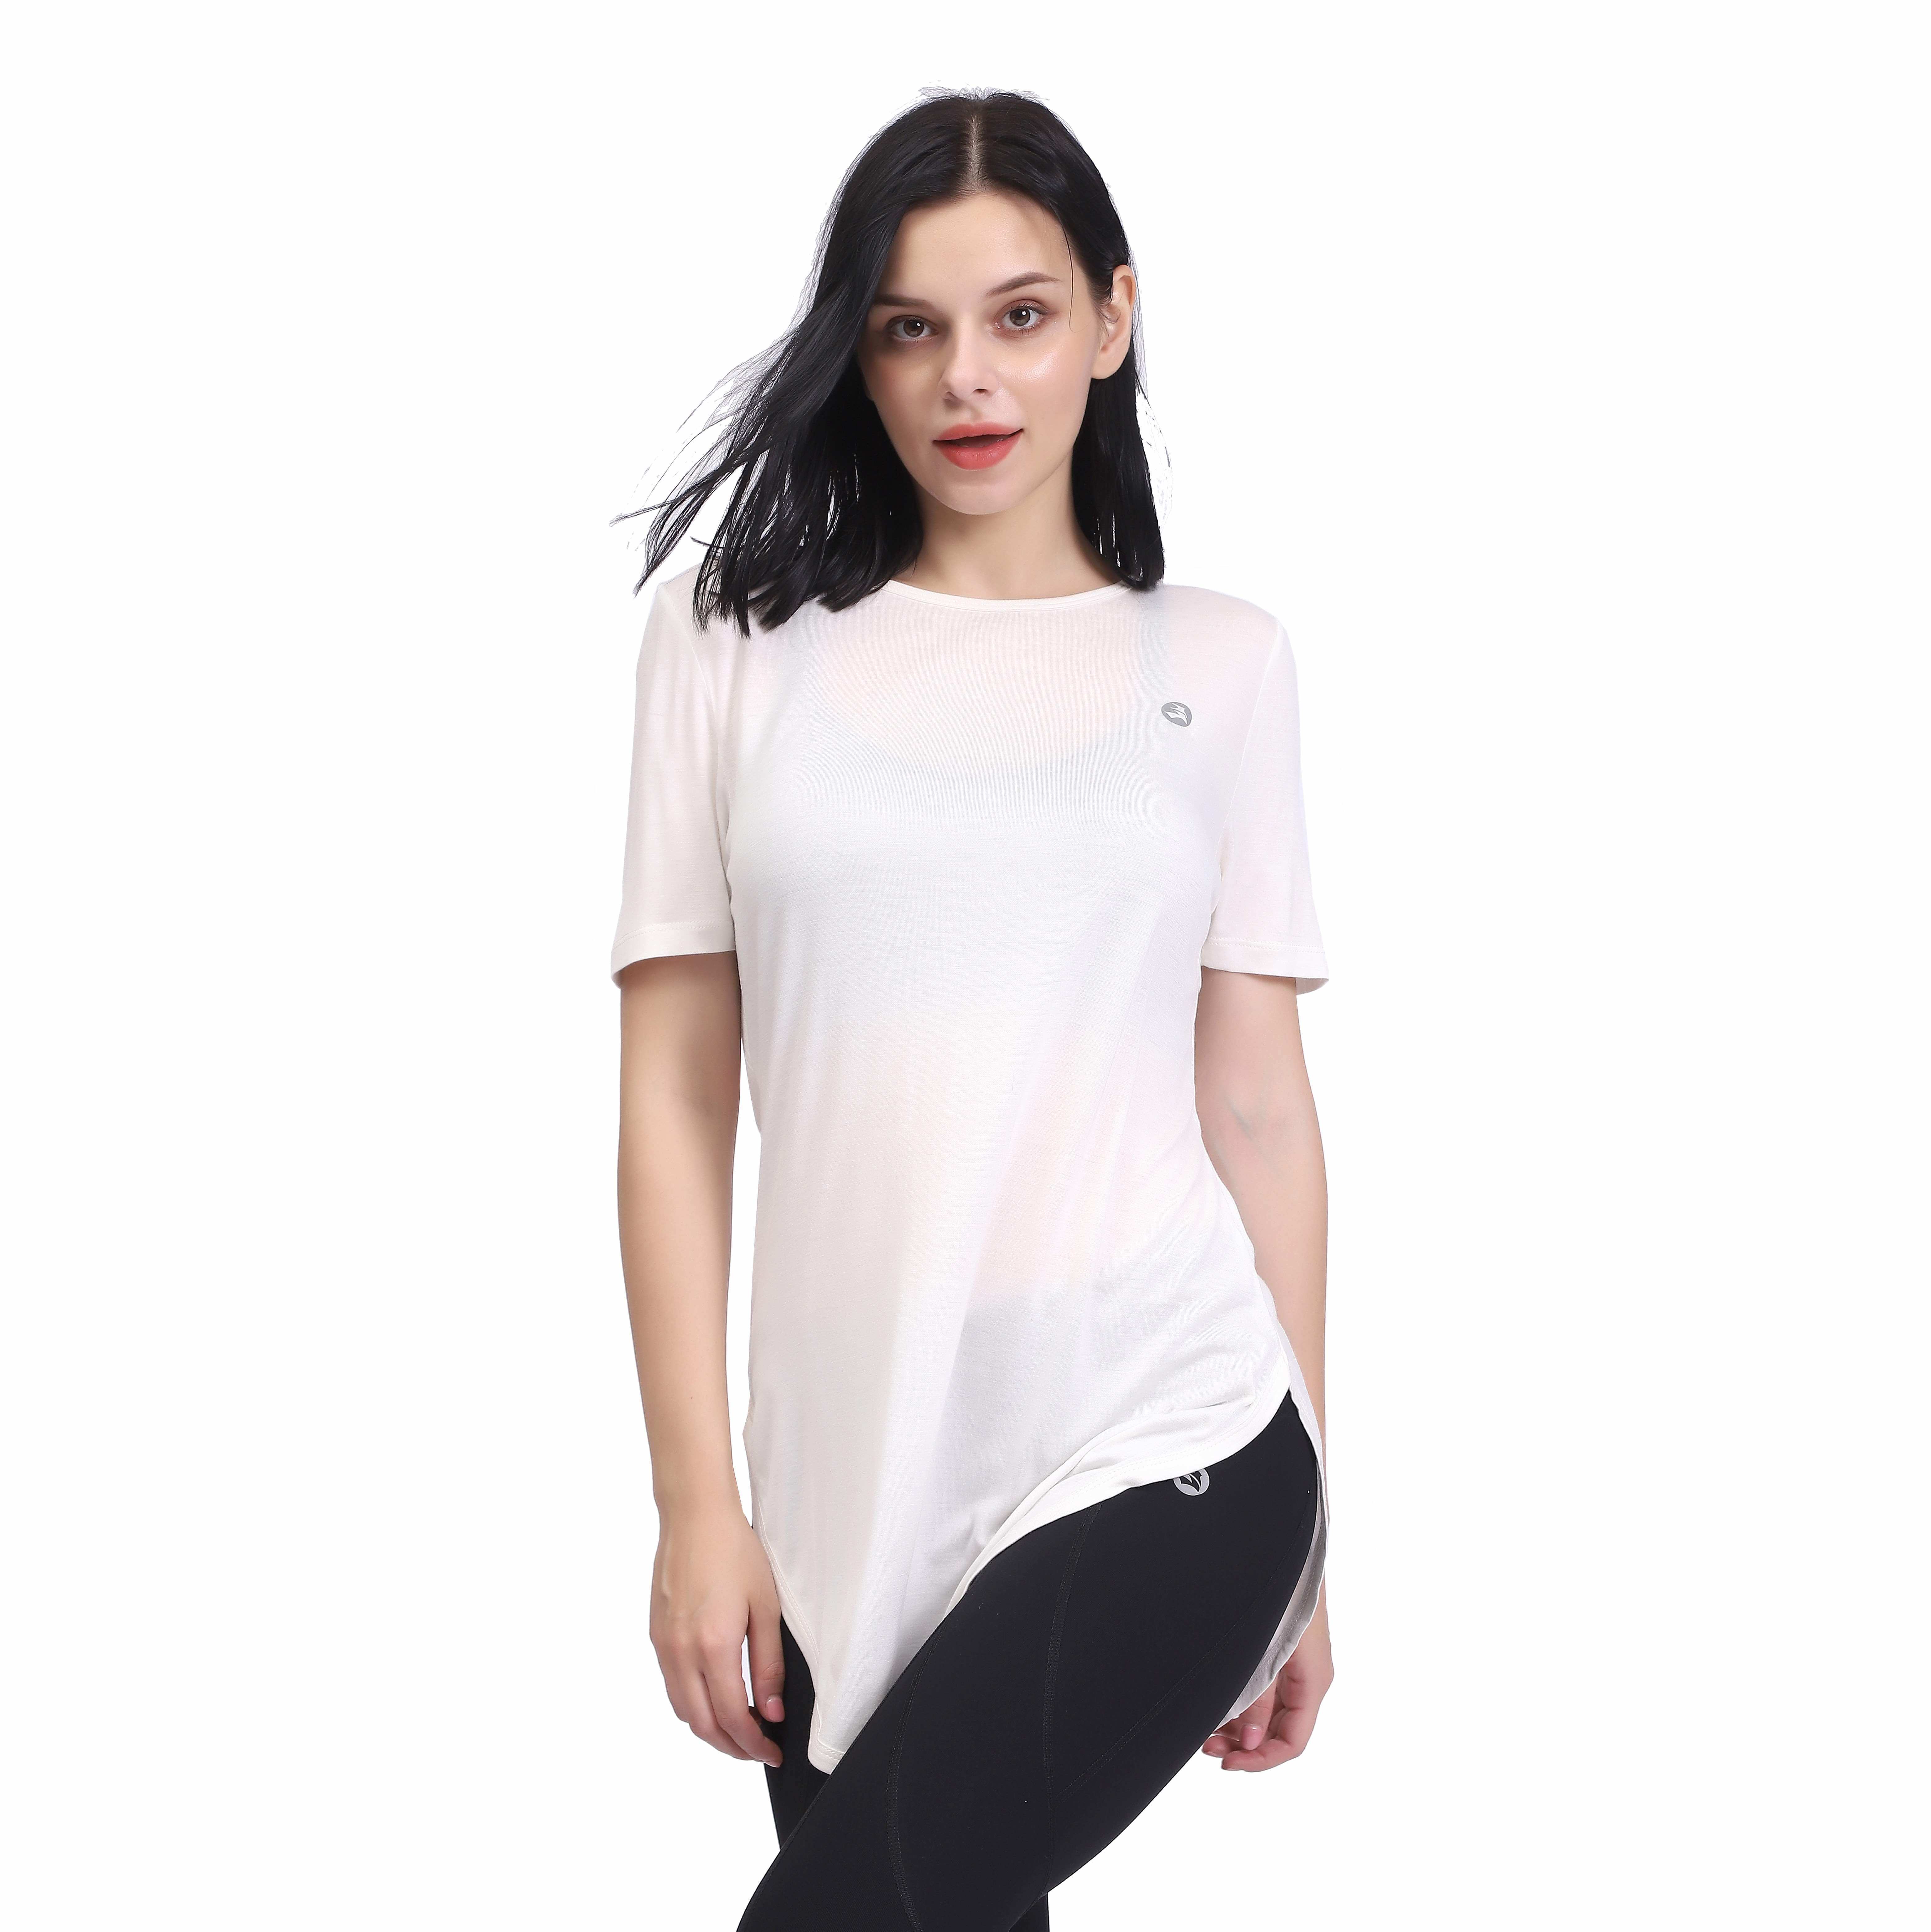 Camiseta de manga corta con dobladillo curvo en la espalda blanca para mujer